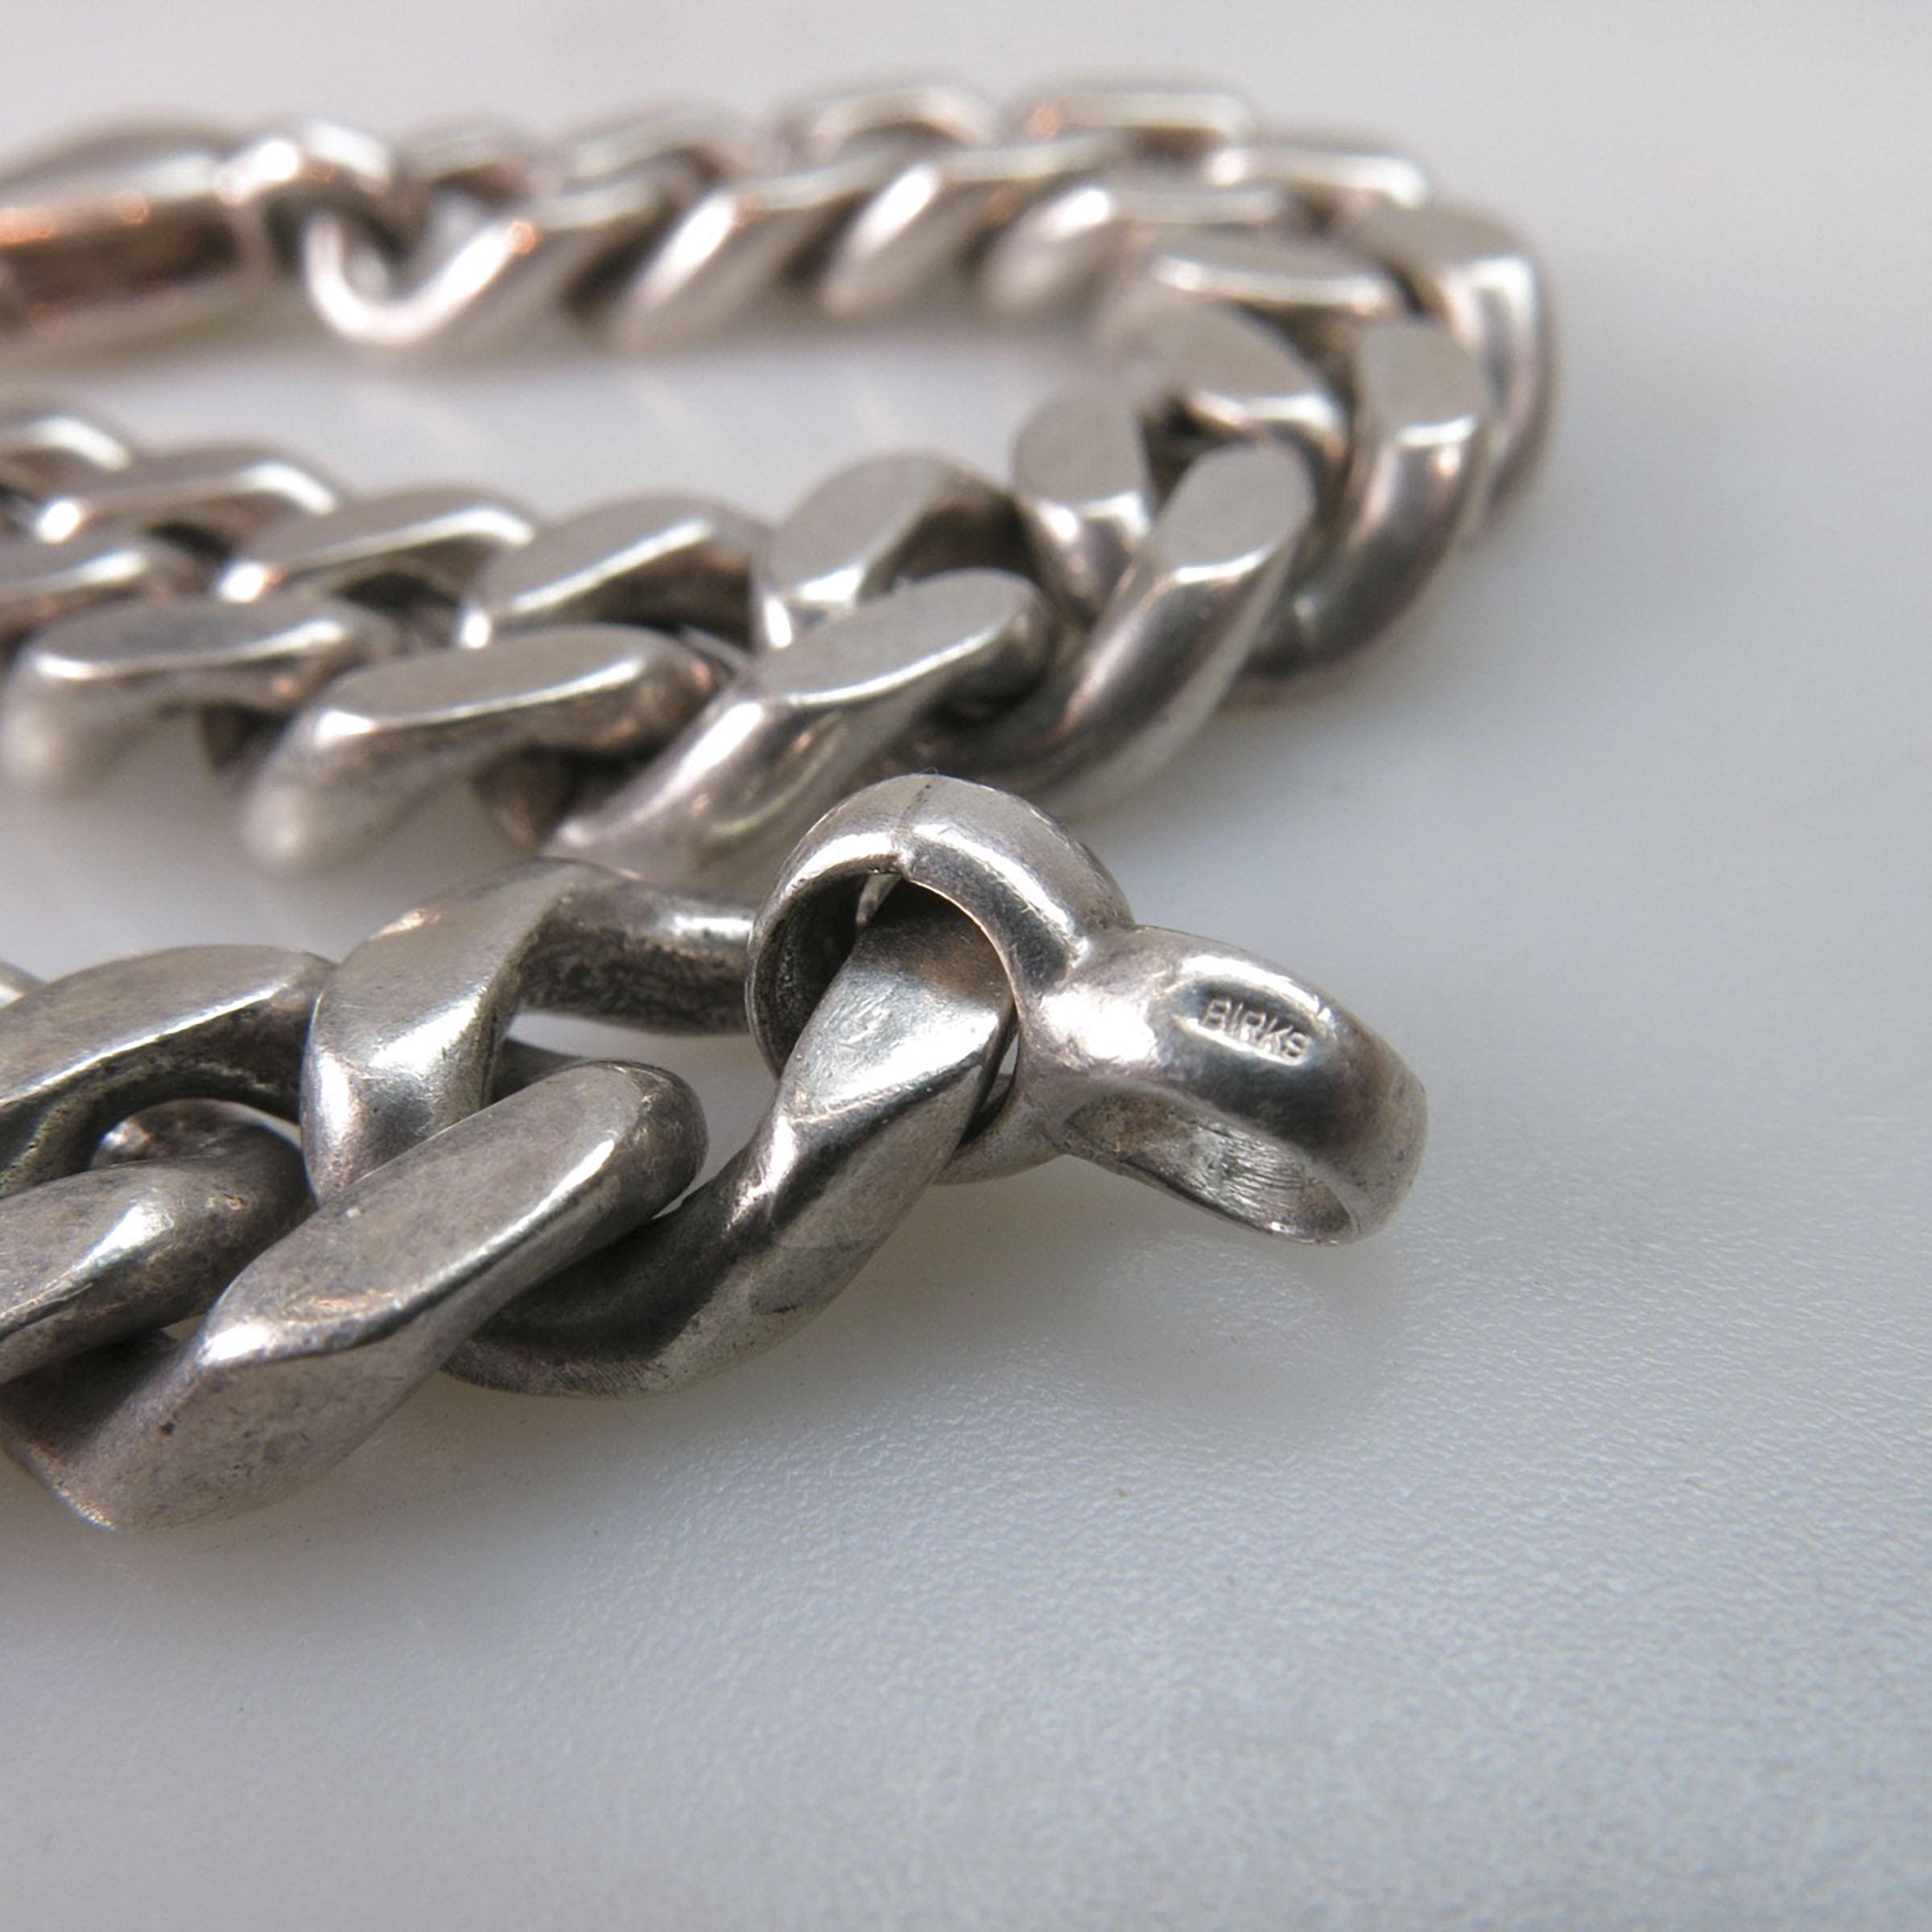 Birks Sterling Silver Curb Link Bracelet